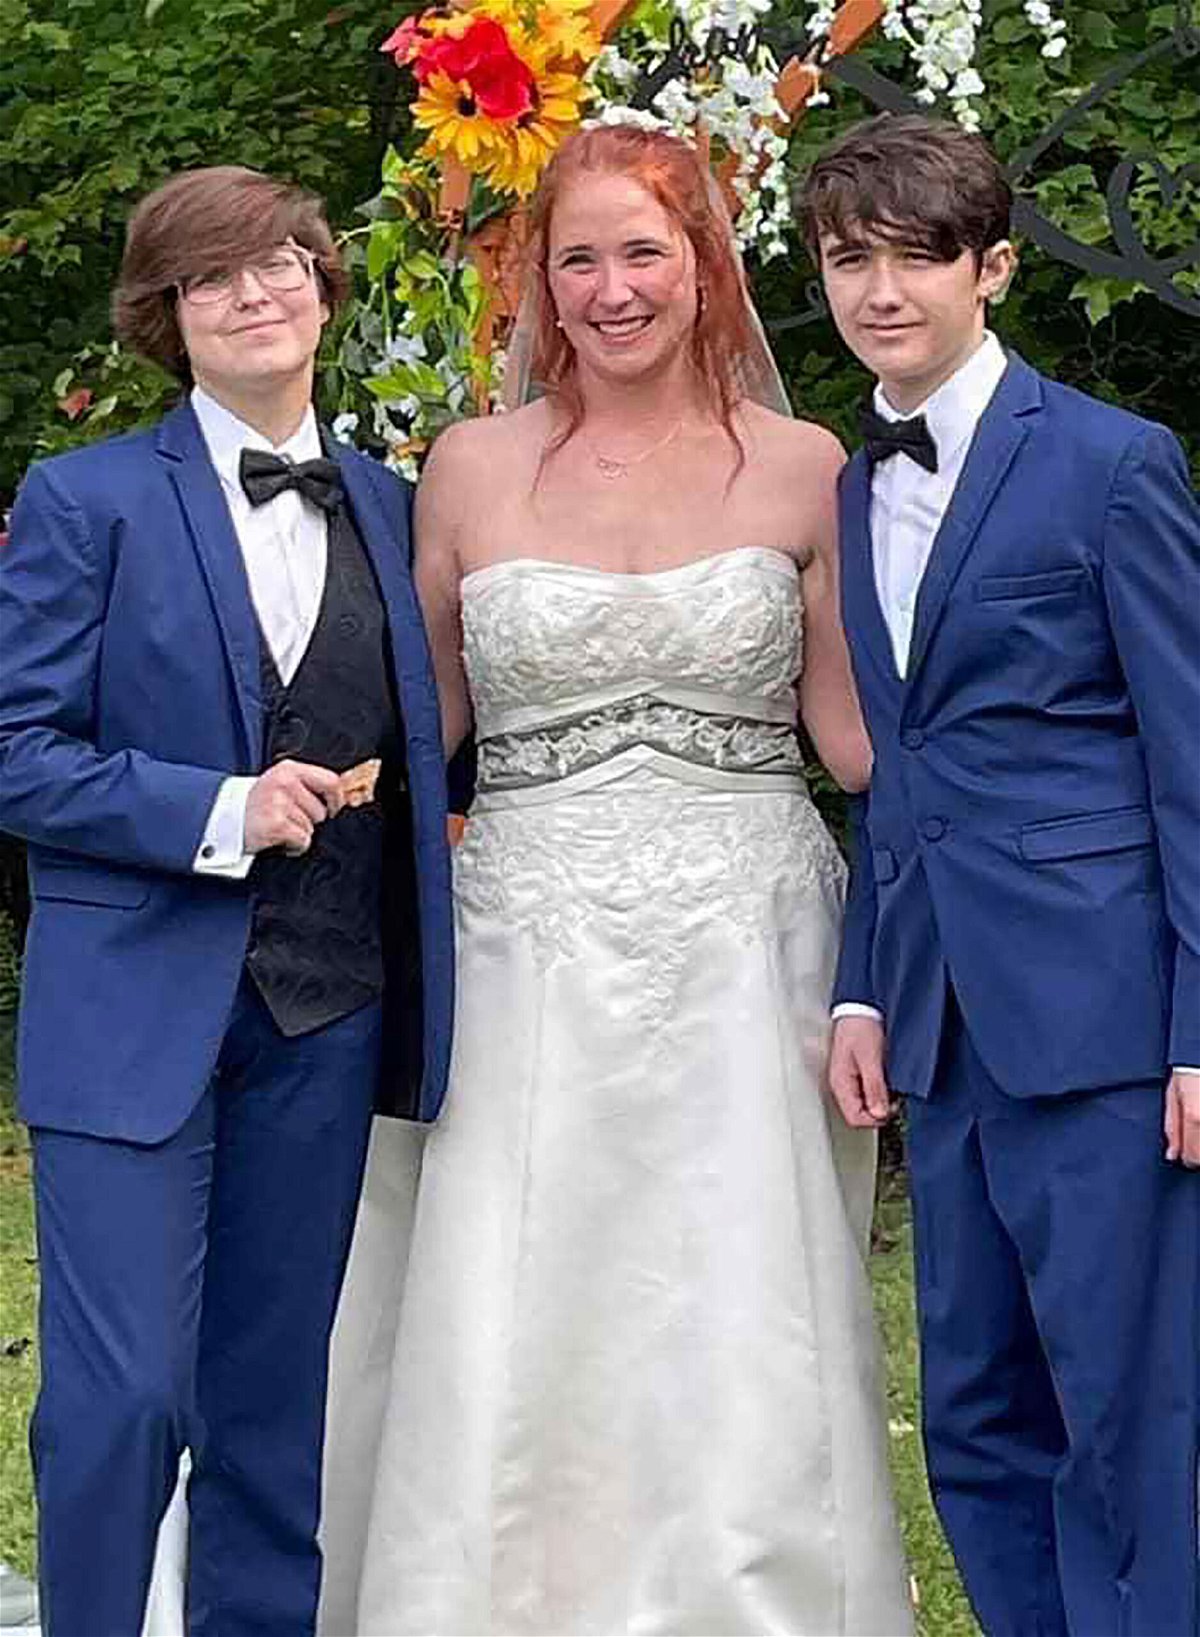 <i>Courtesy Karen Mahoney</i><br/>Karen Mahoney poses with her two sons at the full ceremony on September 25.